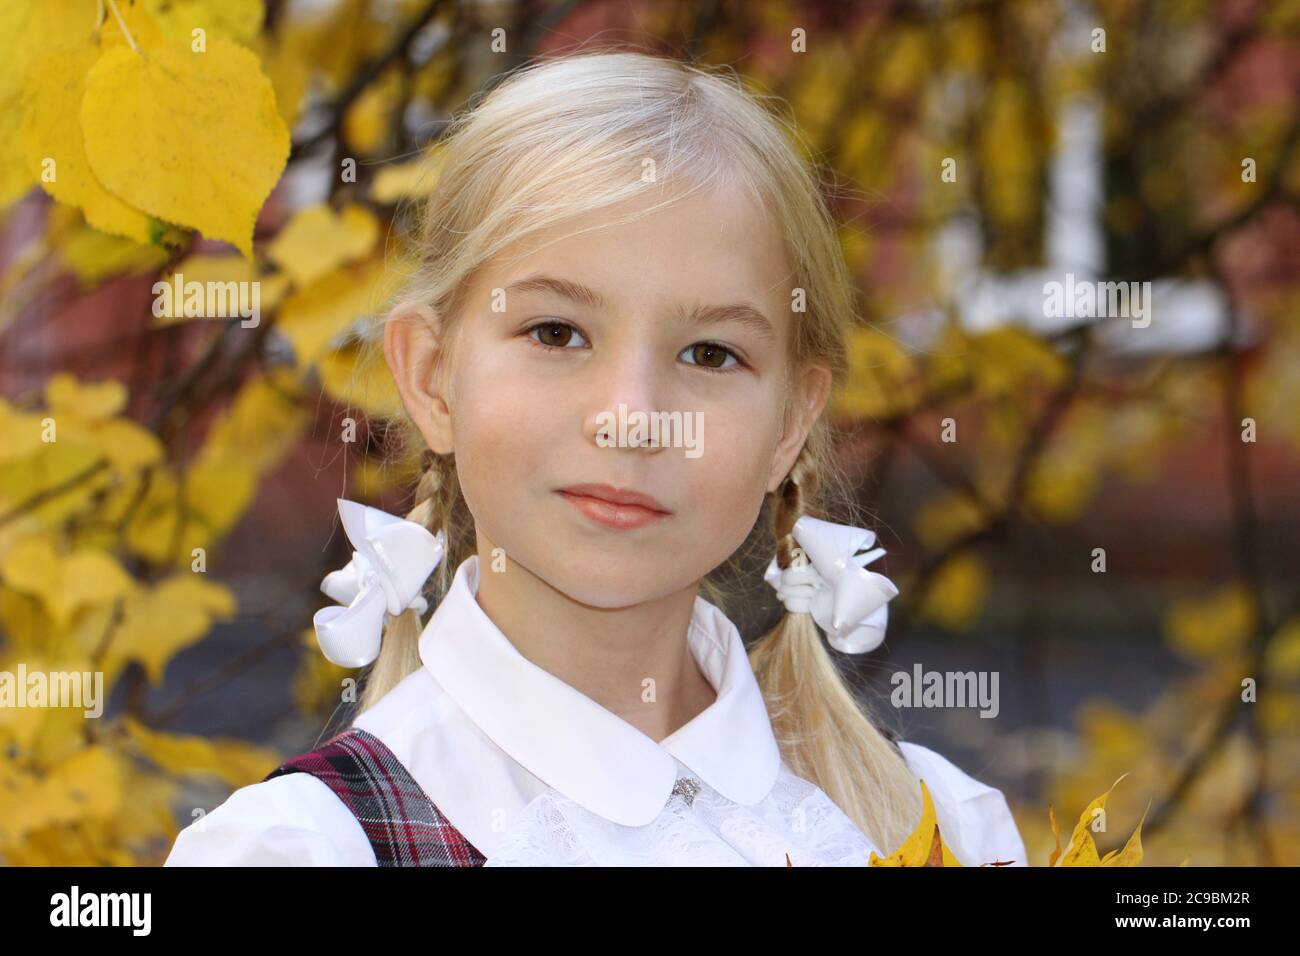 Une écolière blonde de race blanche va à l'école en automne sur fond de feuilles jaunes Banque D'Images